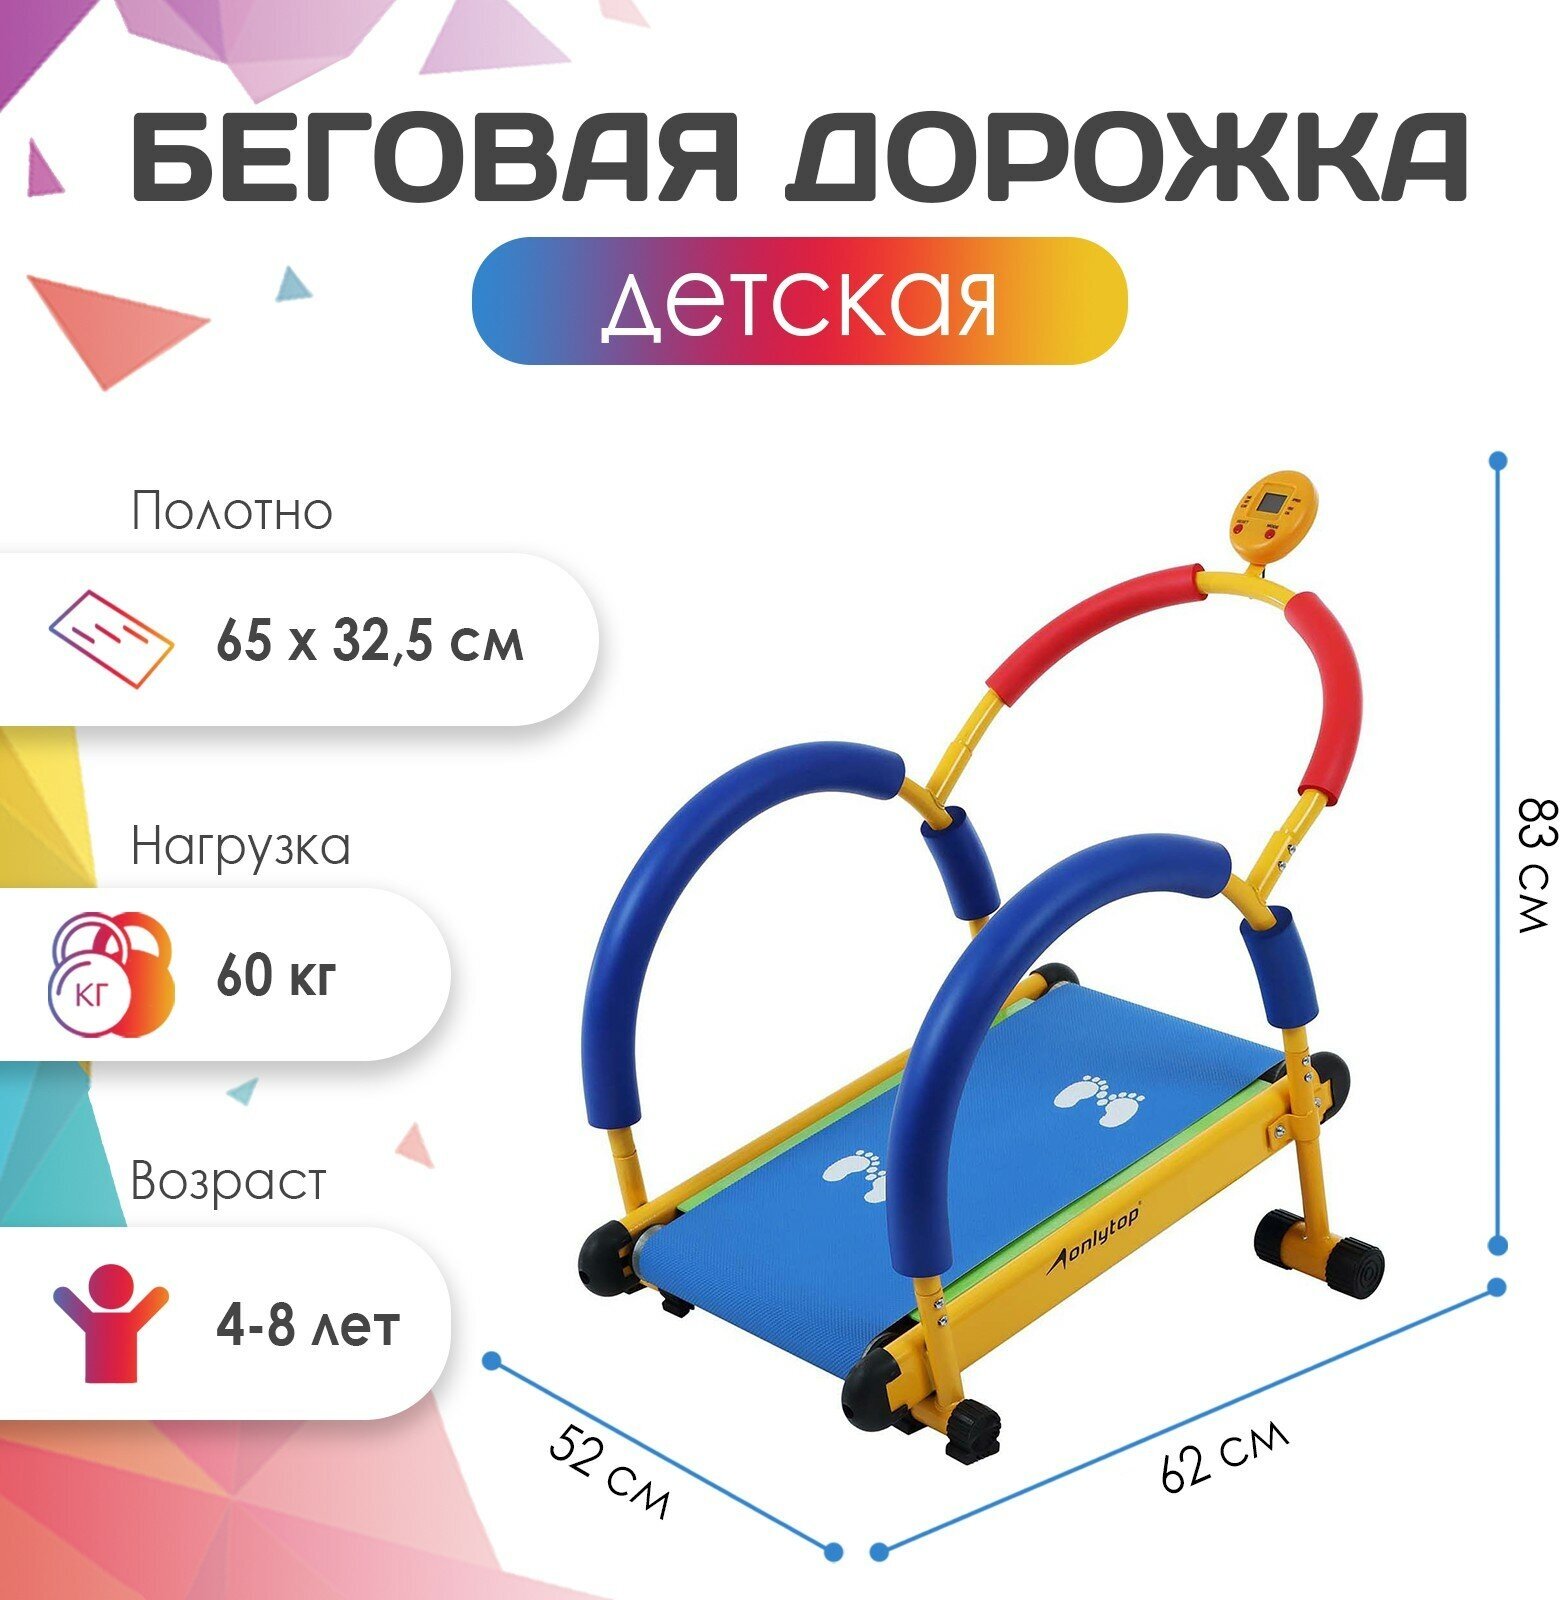 Беговая дорожка ONLITOP, детская, для детей от 4-8 лет, максимальный вес пользователя 60 кг, цвет синий, желтый